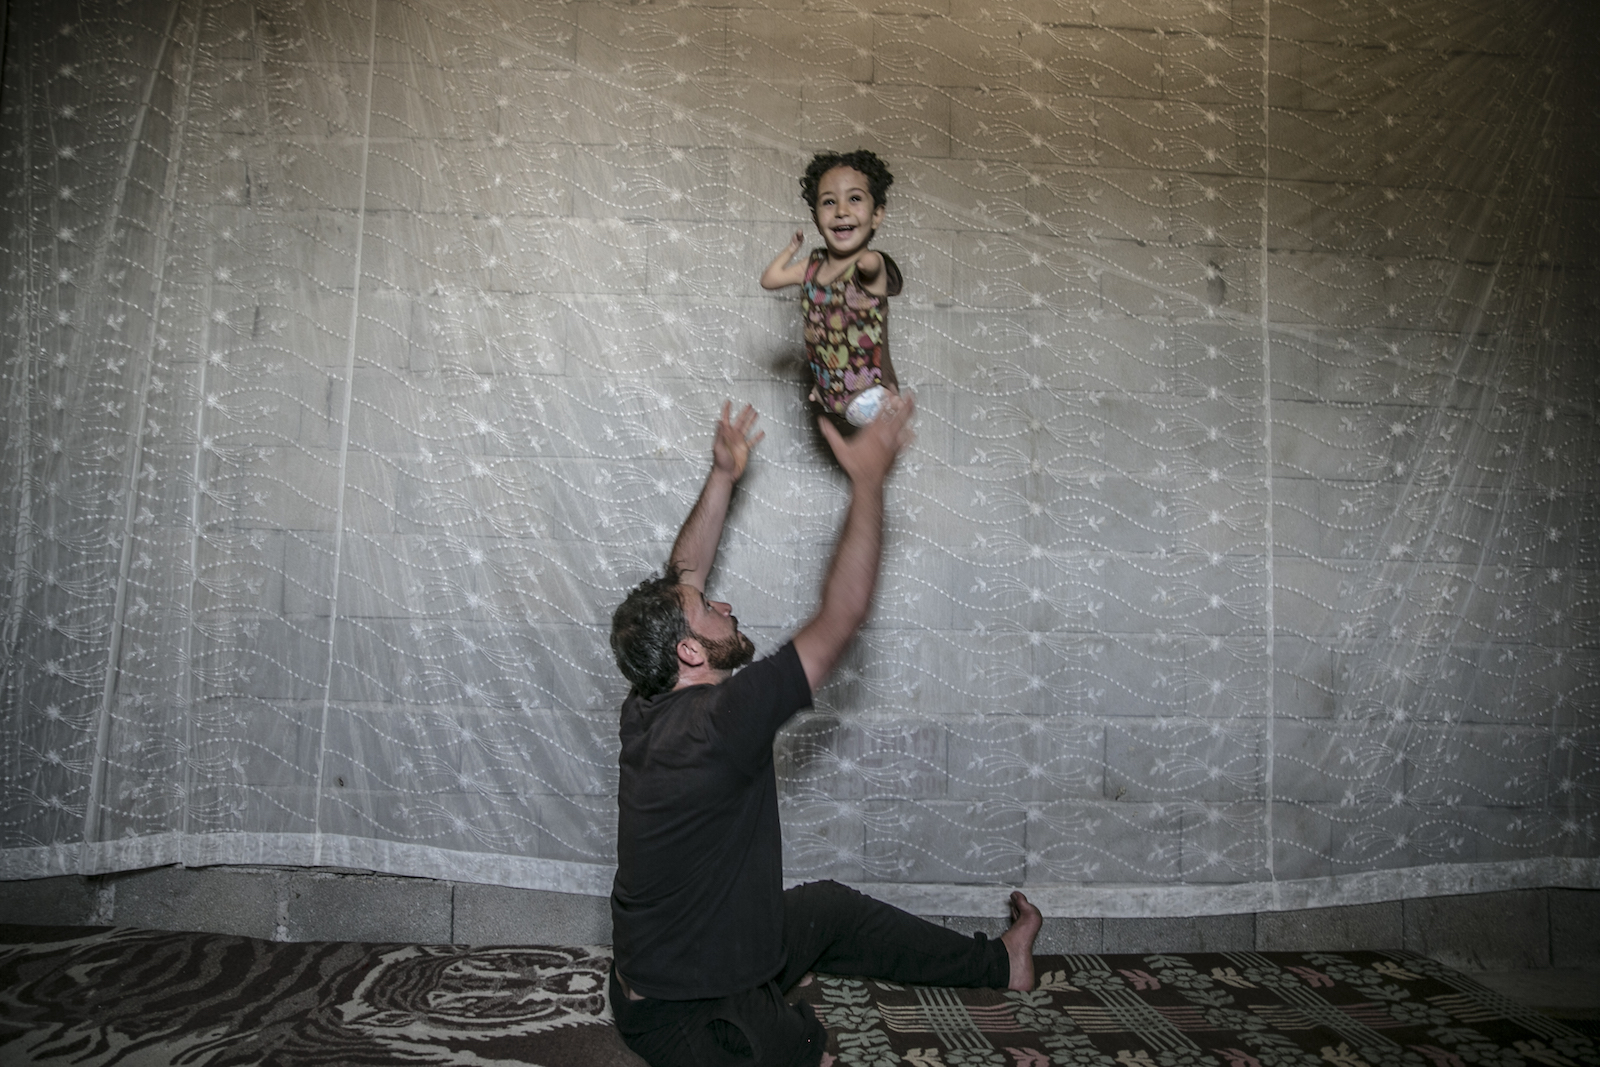 أب سوري فقد ساقه اليمنى في الحرب في سوريا واضطر إلى مواصلة حياته بالرصاصة التي أصابت ظهره وهو يداعب ابنته التي ولدت بتشوه خلقي (الأناضول)